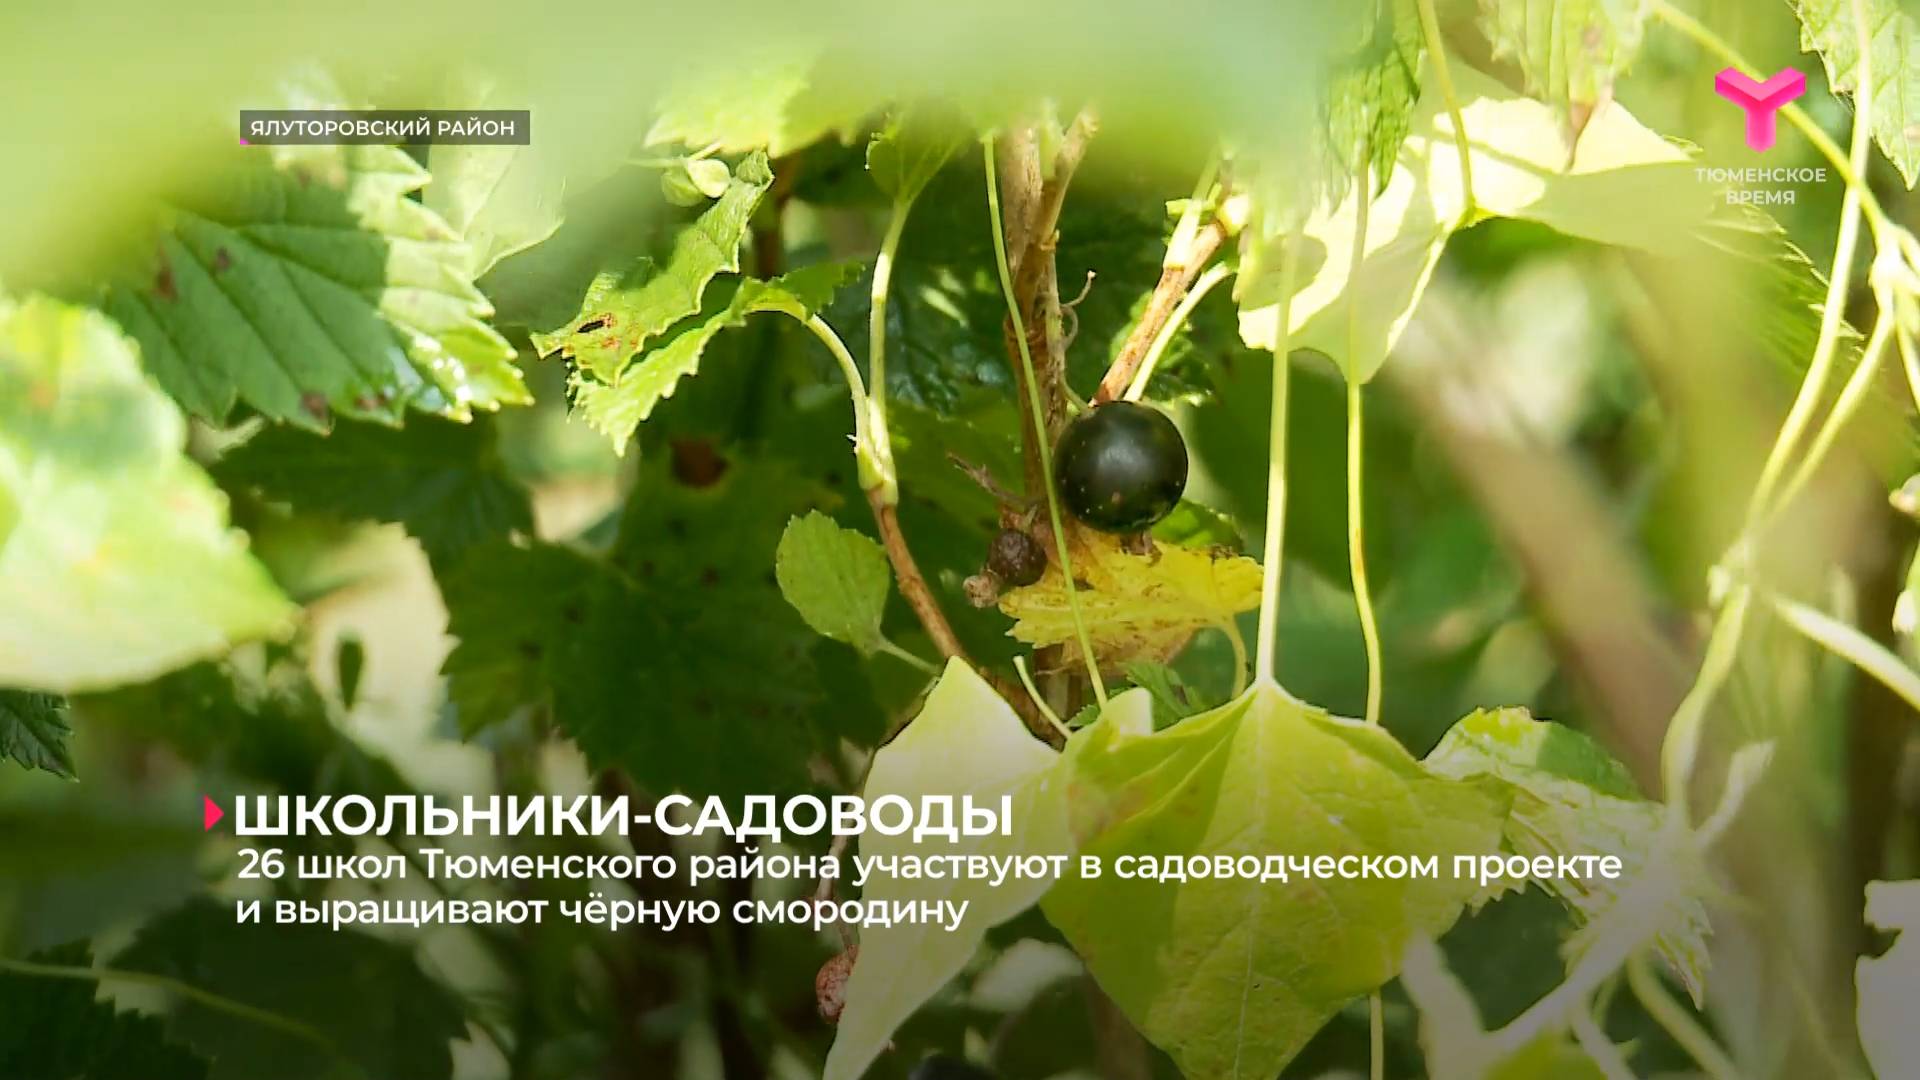 26 школ Тюменского района участвуют в садоводческом проекте и выращивают чёрную смородину